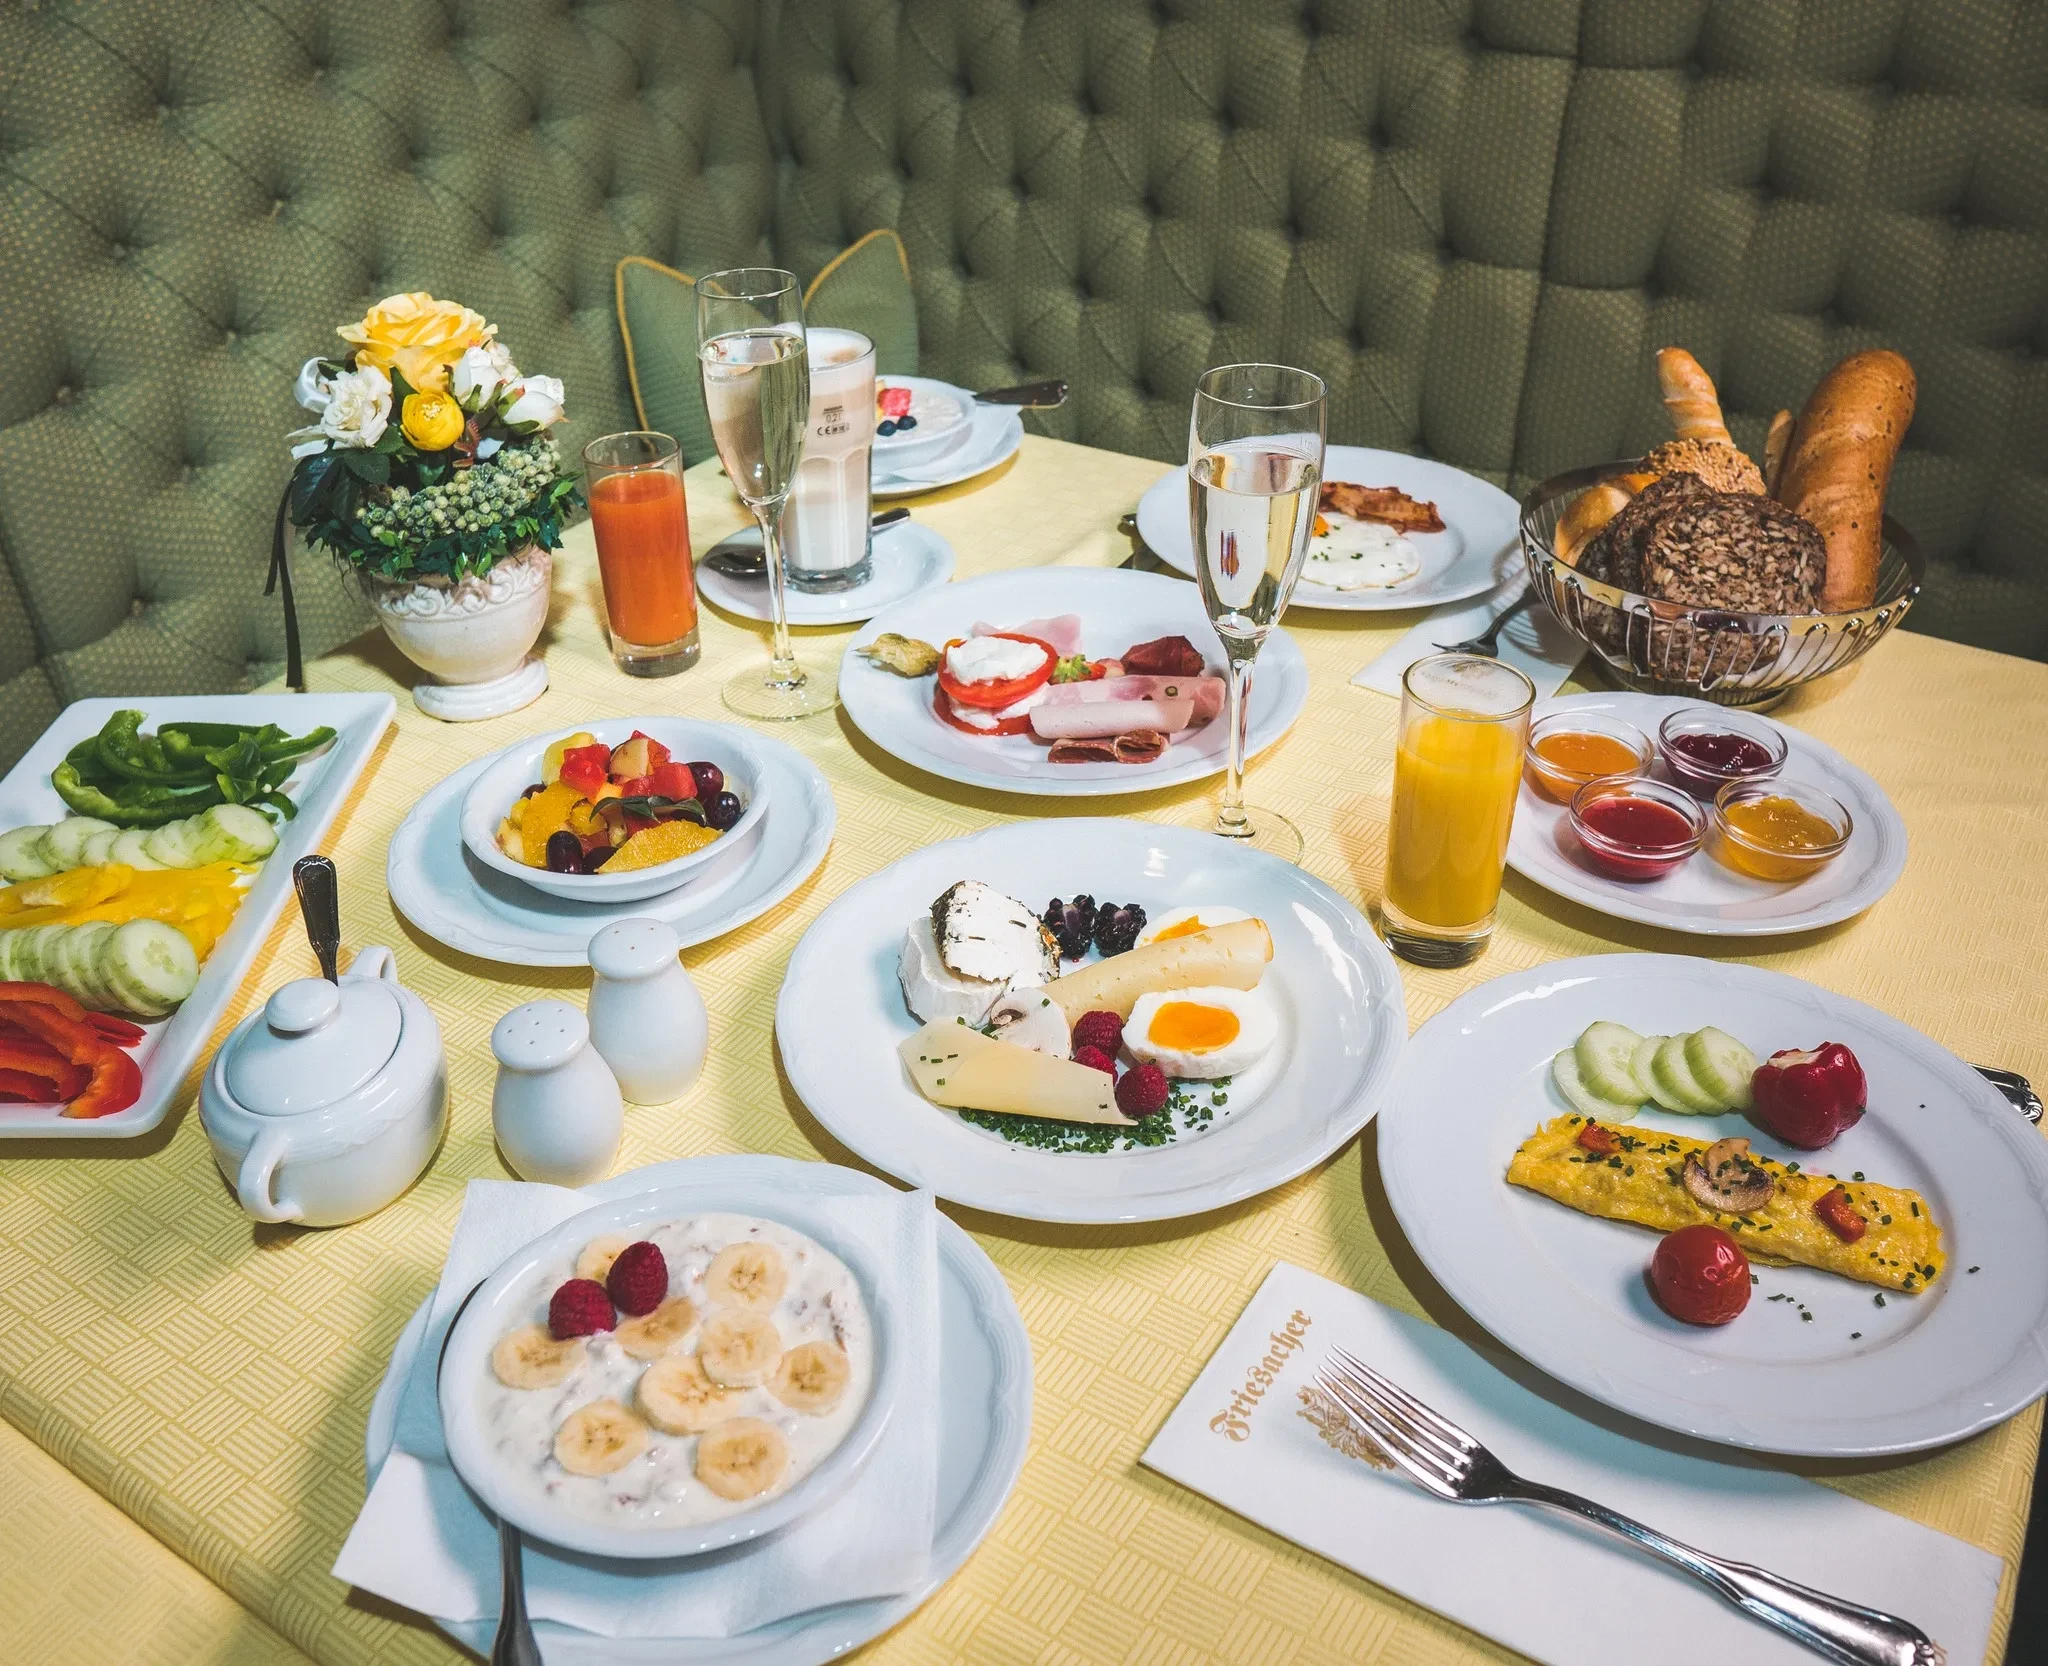 Schlemmerfrühstück mit regionalen Produkten im Hotel Friesacher in Anif